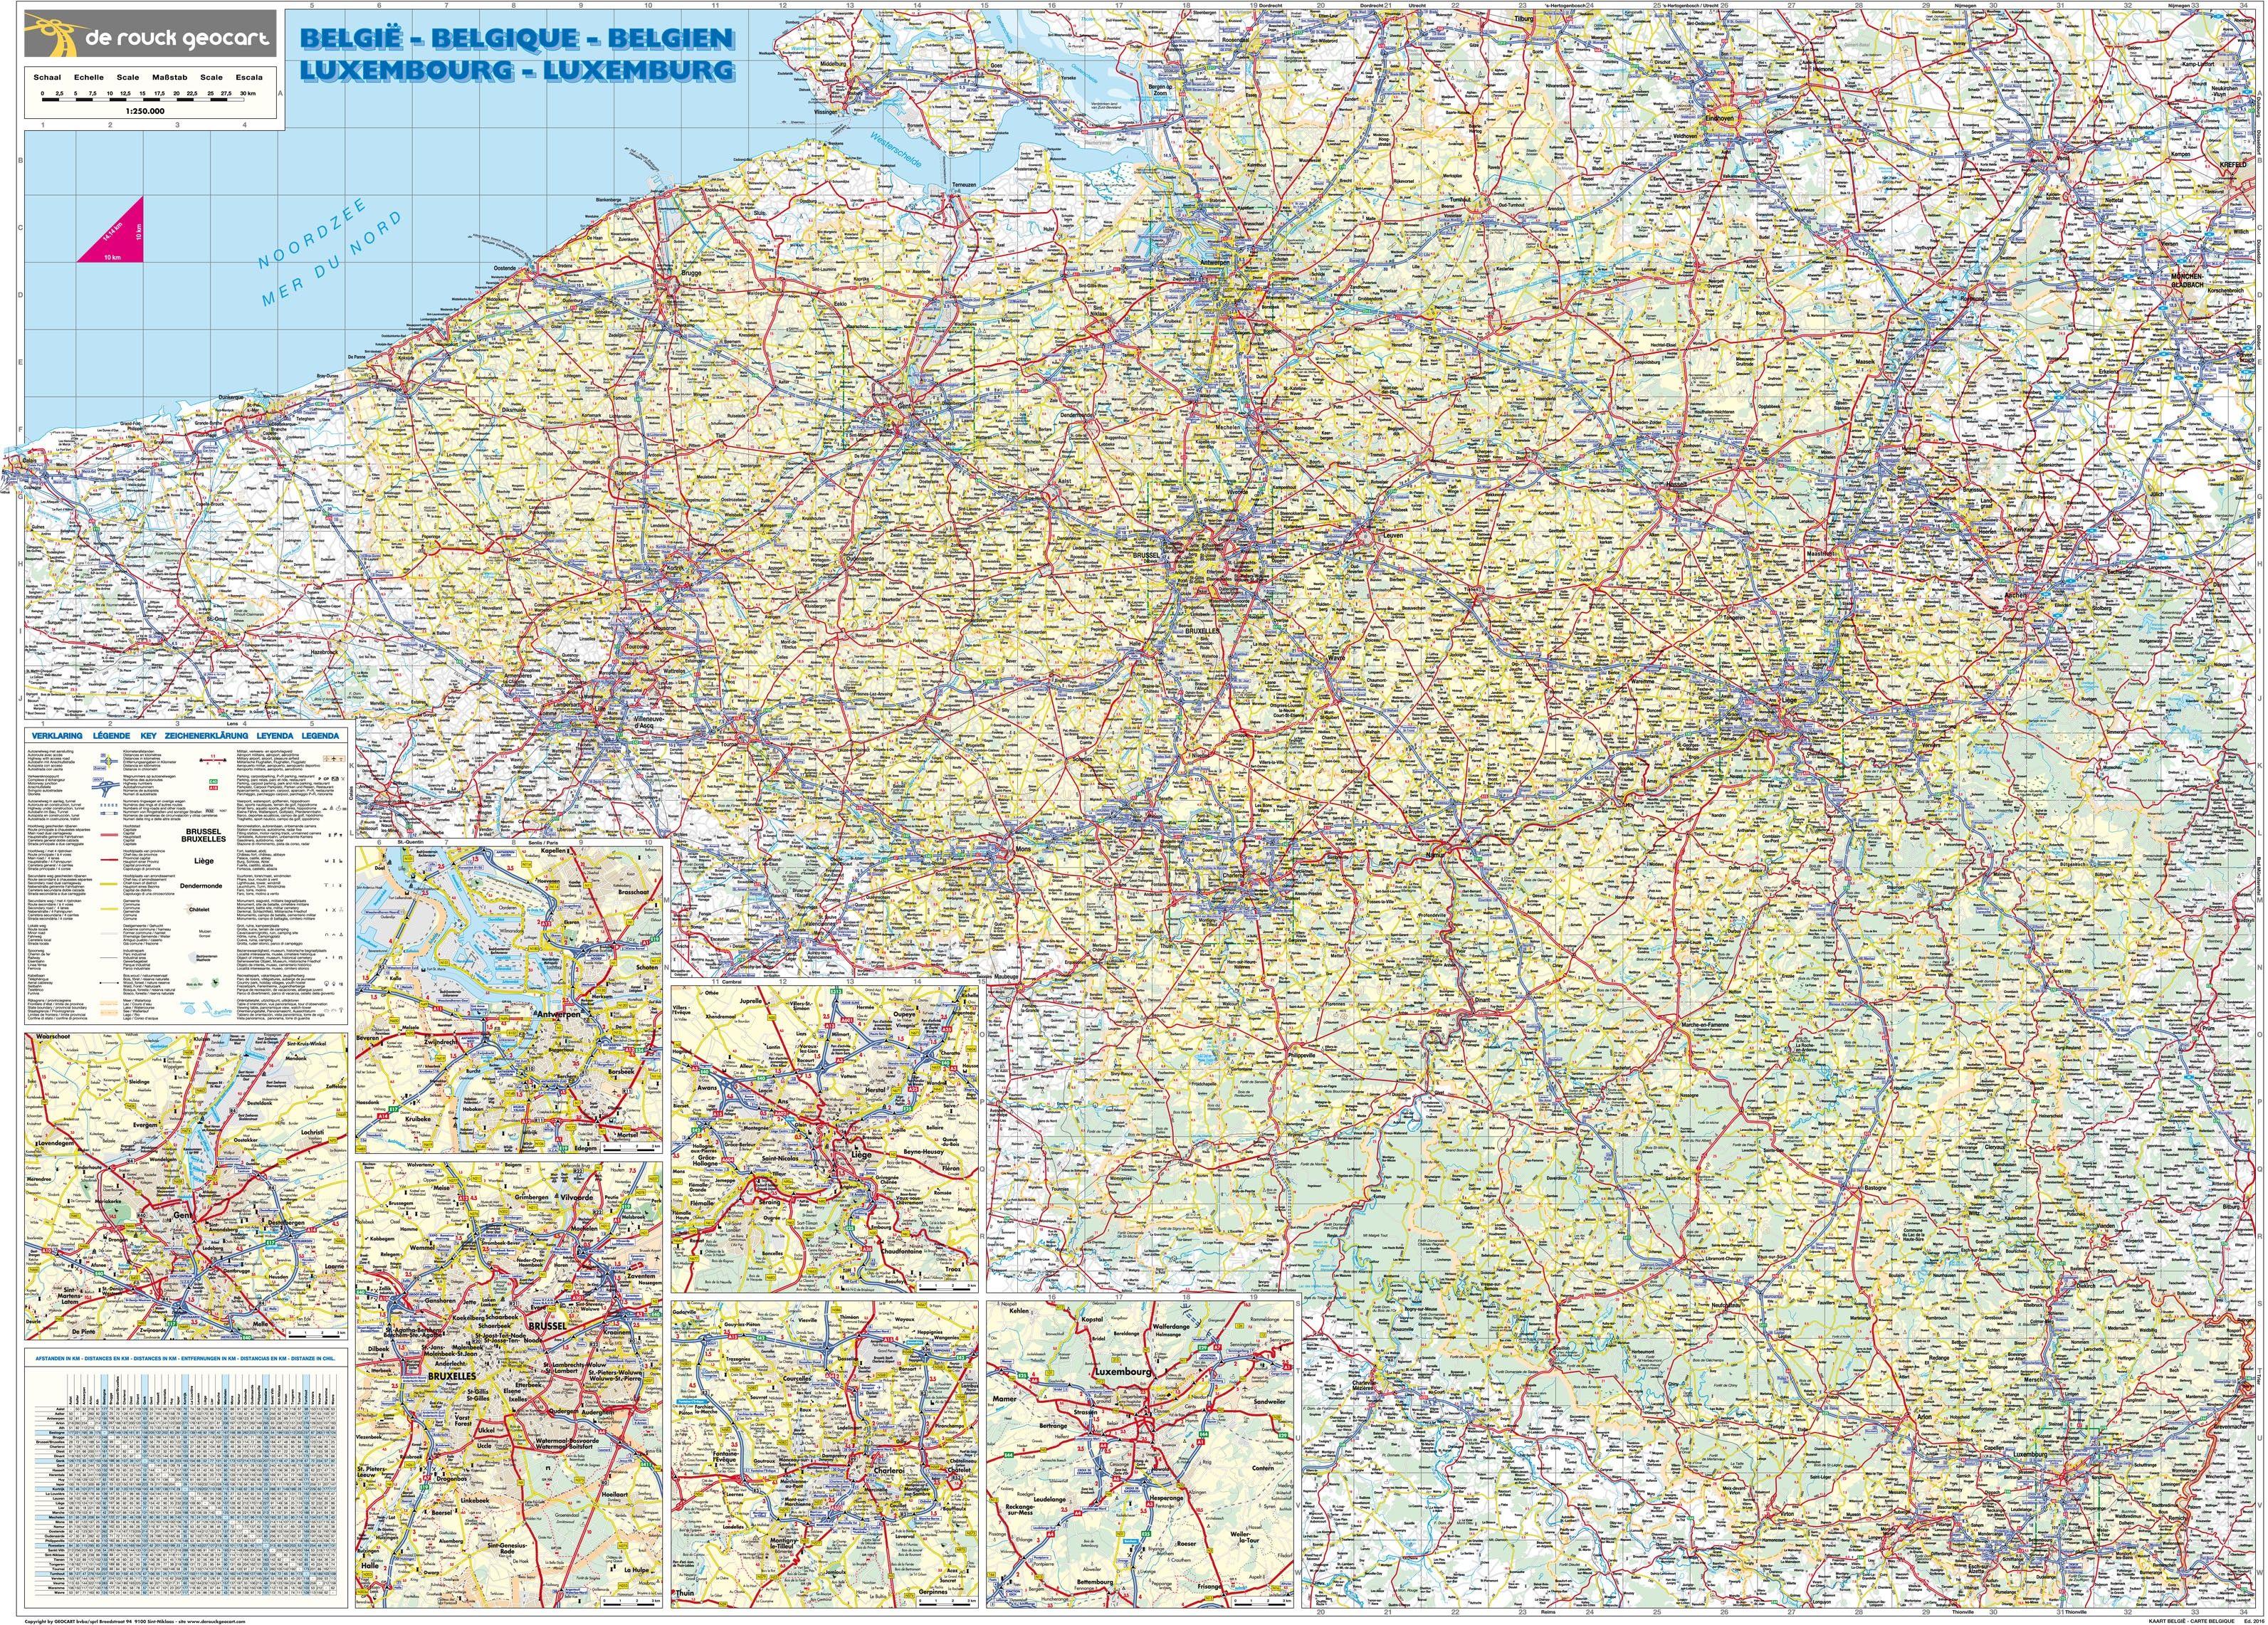 Landkaart Belgie de Rouck Geocart 1:250.000 met Plaatsnamenindex